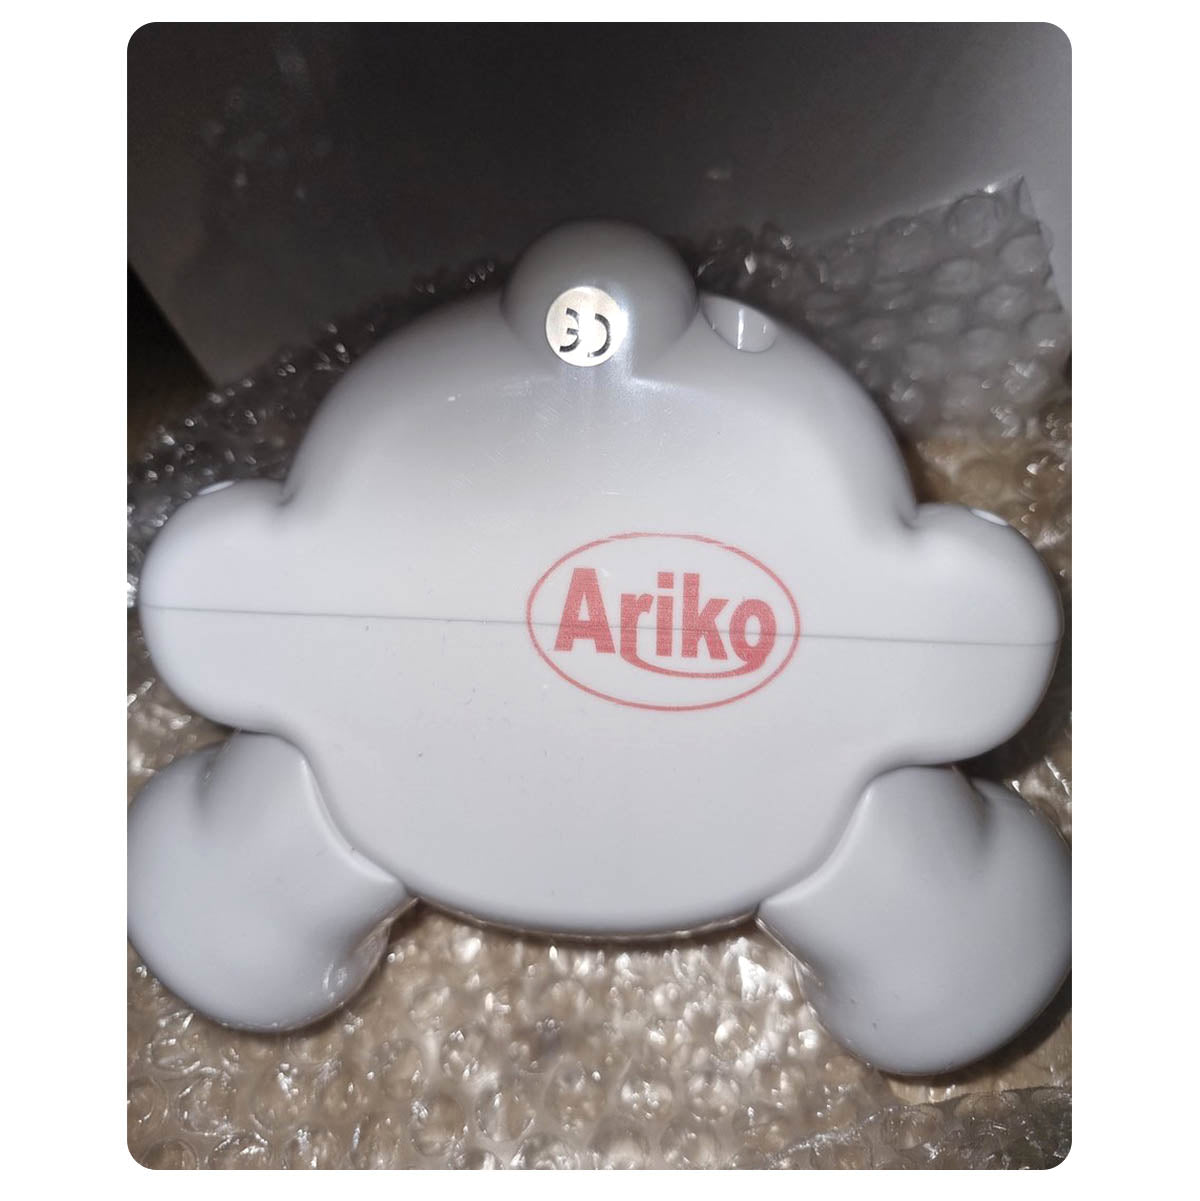 Ariko XL Bär Tischlampe Kinderzimmer Babyzimmer - Nachtlicht - LED dimmbar - 3 Stufen dimmbar - Blau - Teddybär